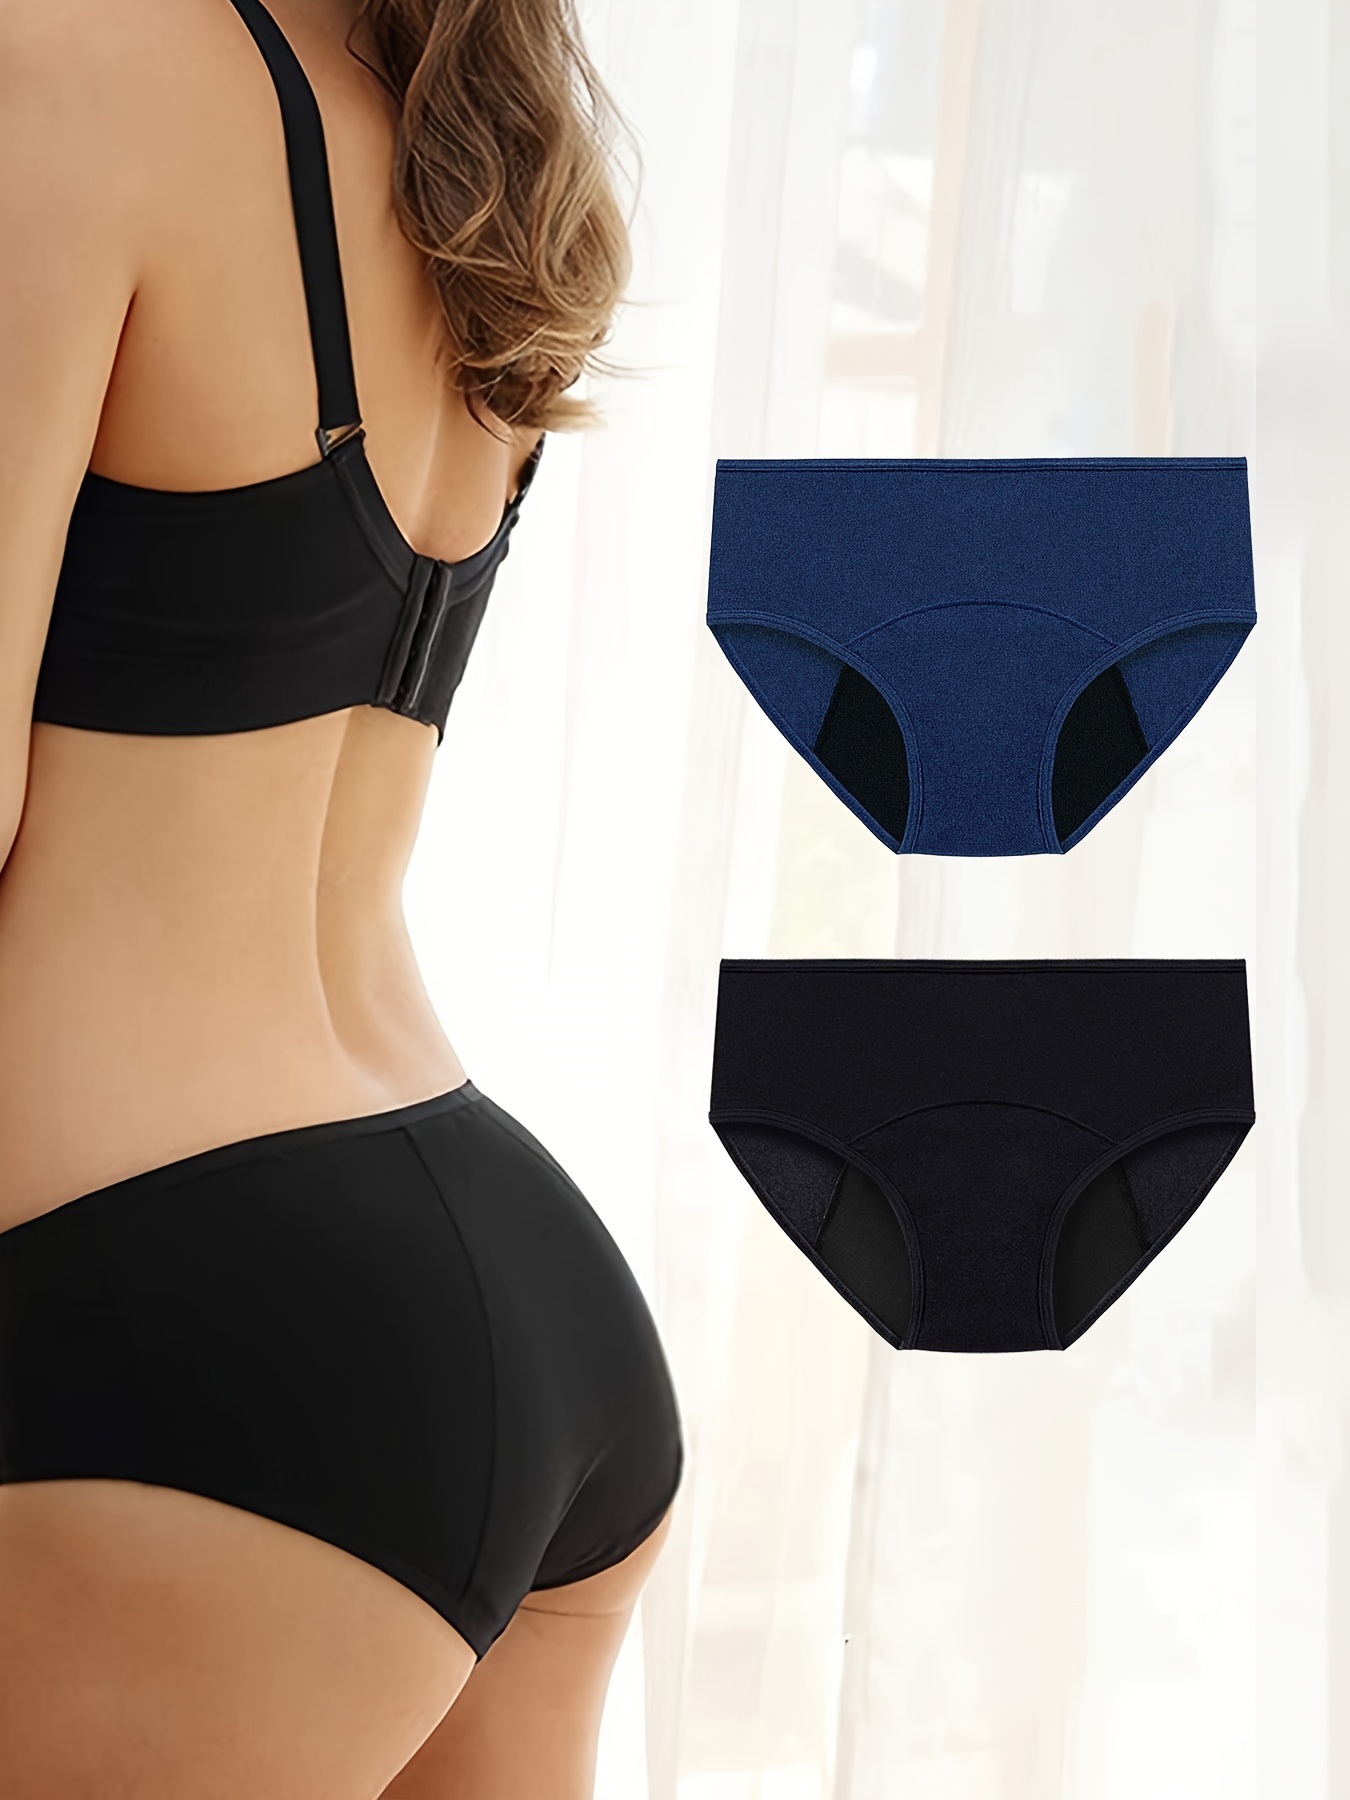 Period Underwear Women's Hipster Cotton Briefs Sexy V-waist Leak